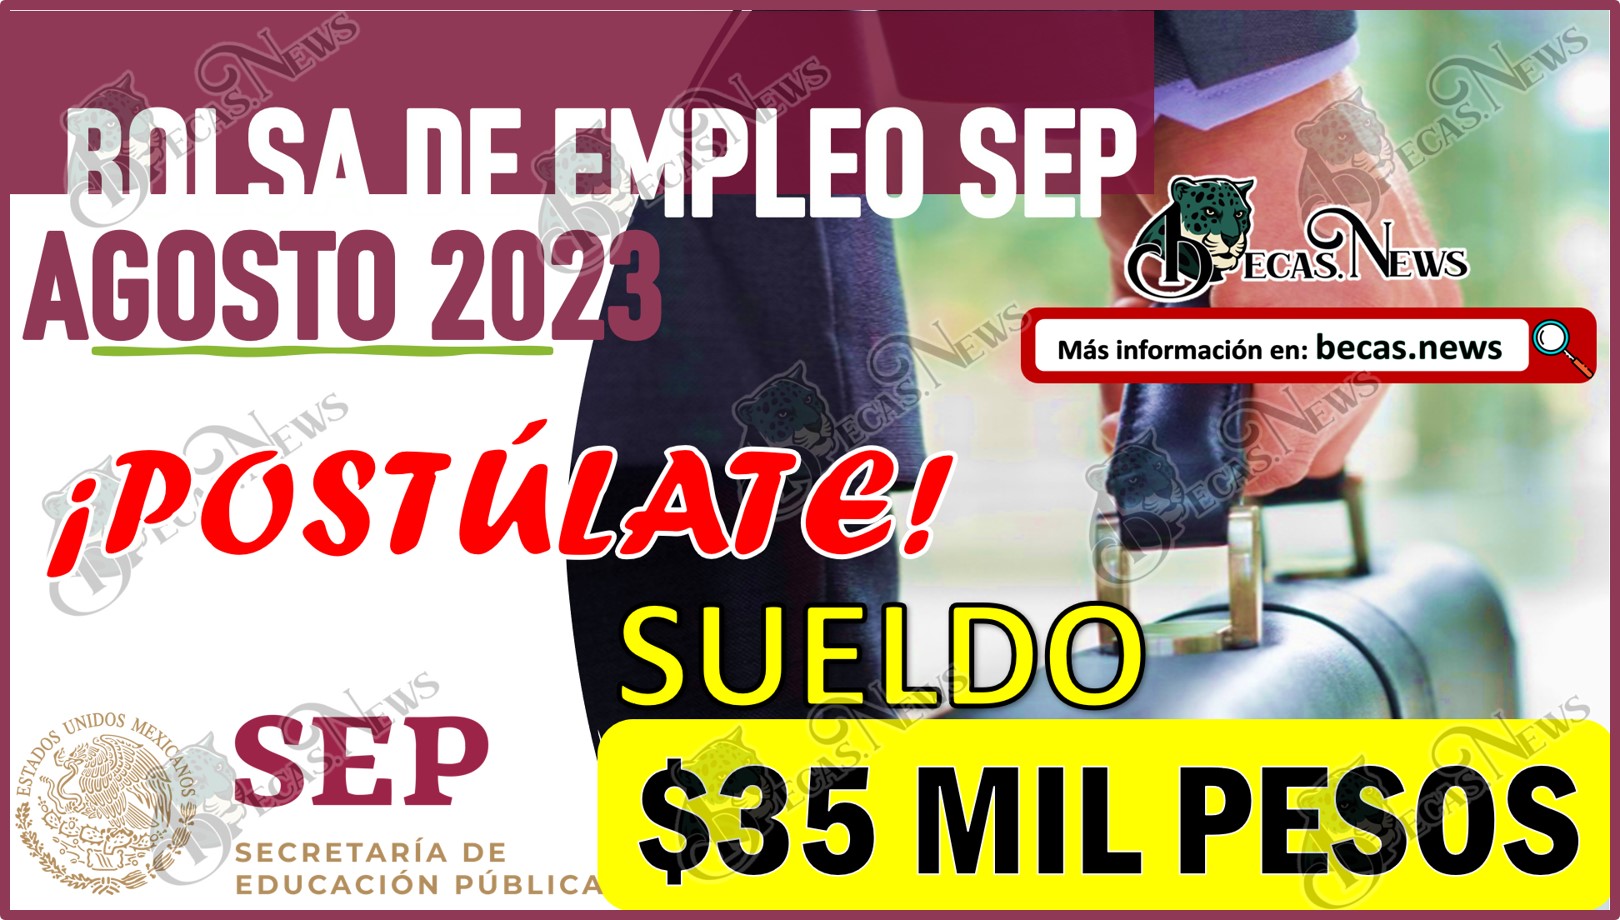 Bolsa de trabajo SEP Agosto 2023 | Postúlate y gana más de $35 mil pesos